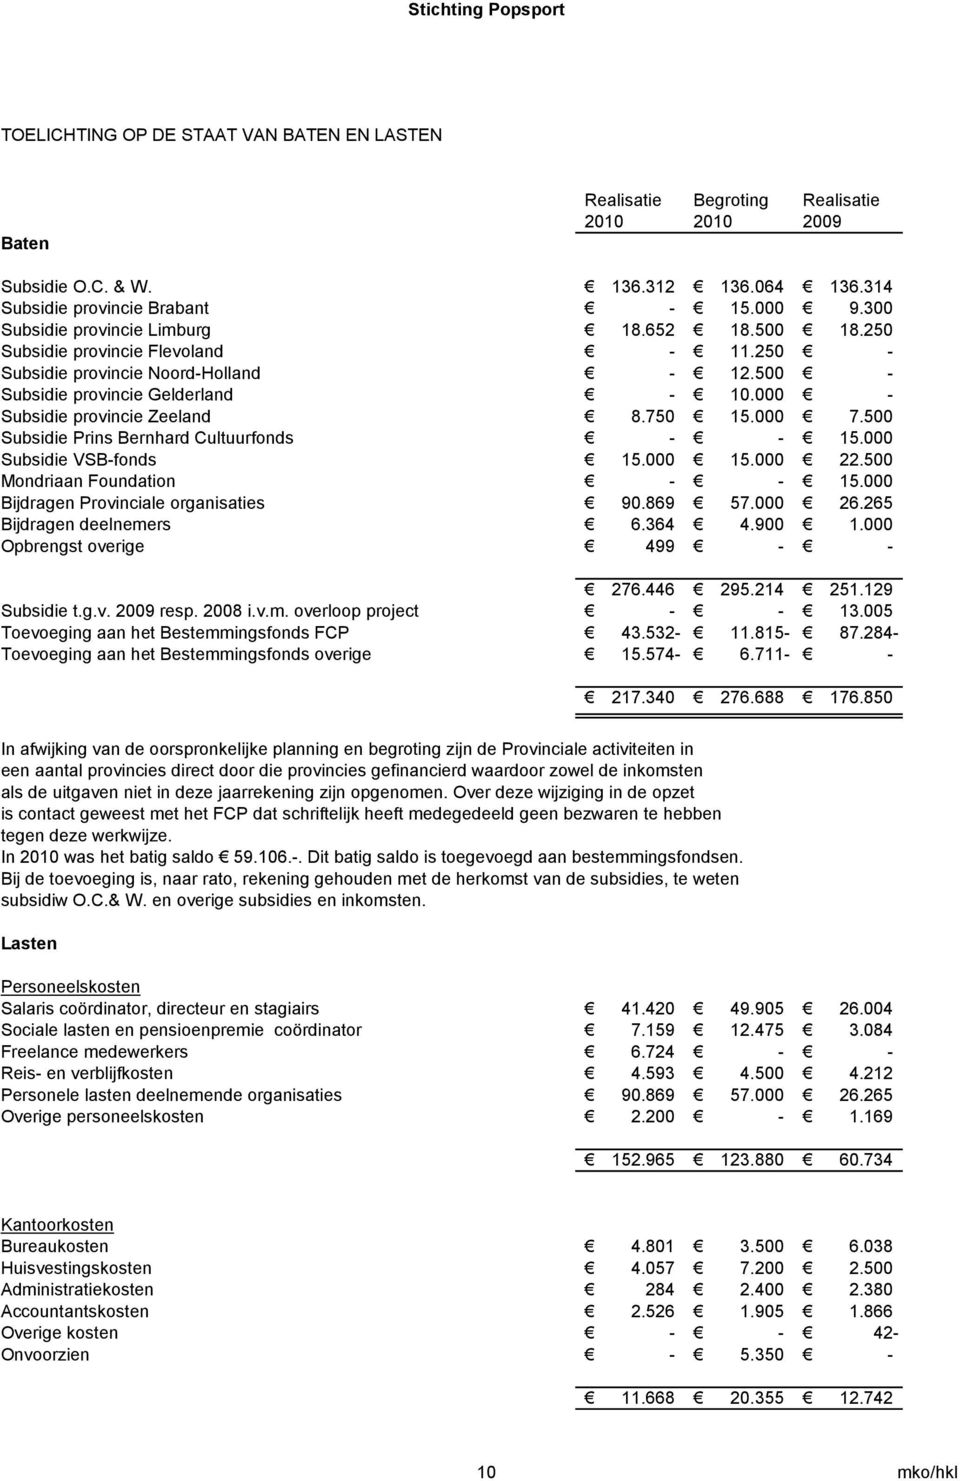 000 - Subsidie provincie Zeeland 8.750 15.000 7.500 Subsidie Prins Bernhard Cultuurfonds - - 15.000 Subsidie VSB-fonds 15.000 15.000 22.500 Mondriaan Foundation - - 15.